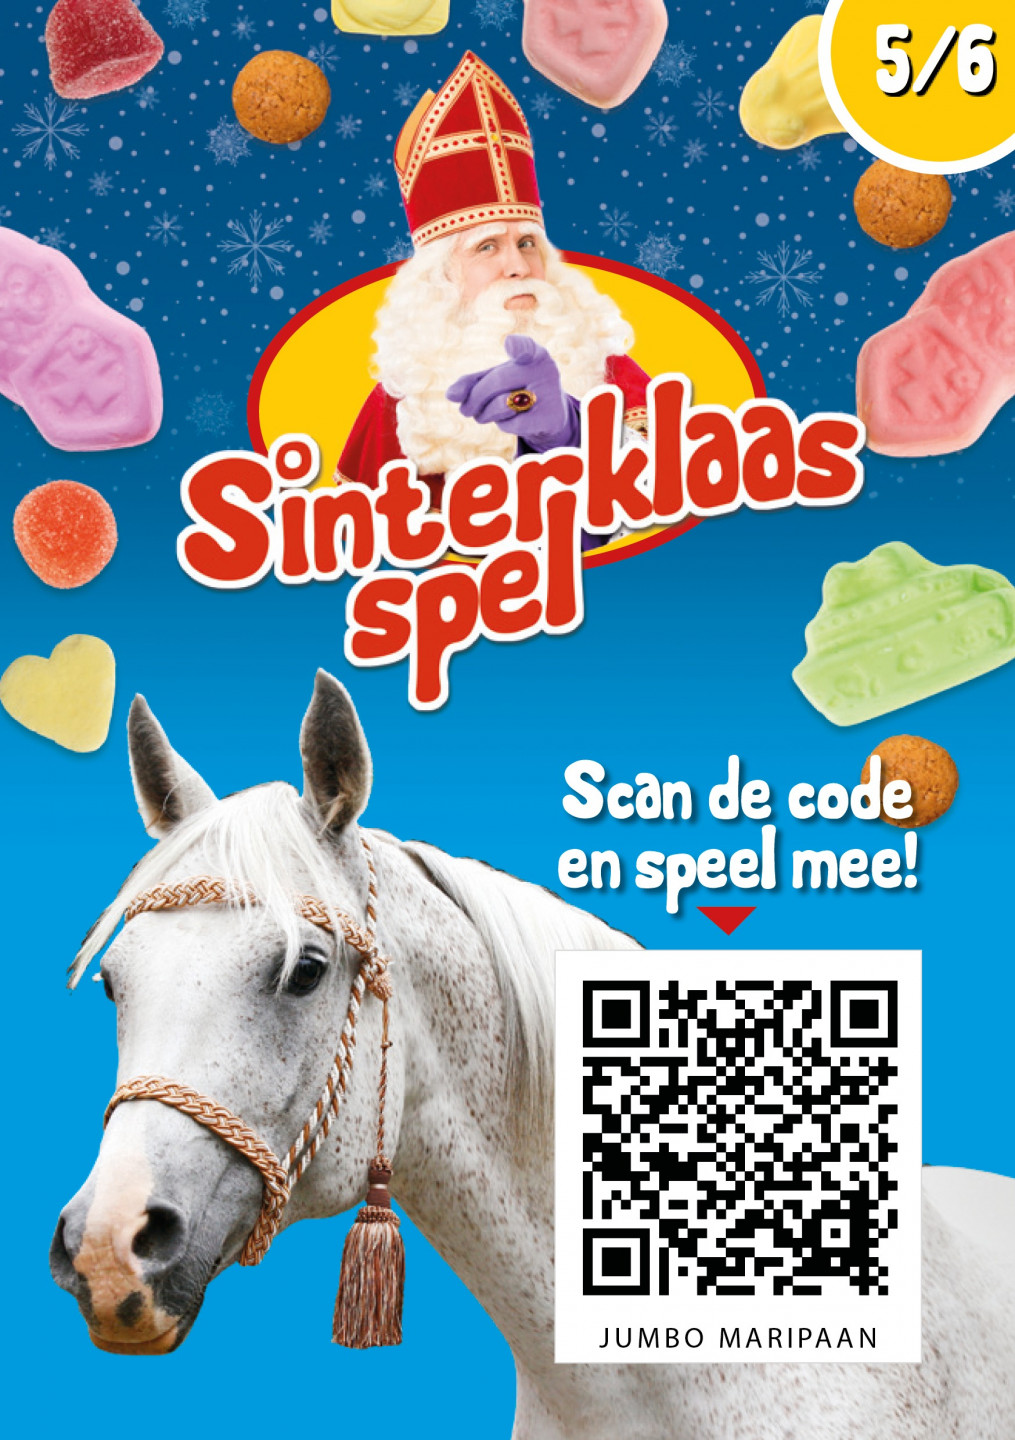 Leuke Sinterklaas spaaracties supermarkt Sinterklaasspel